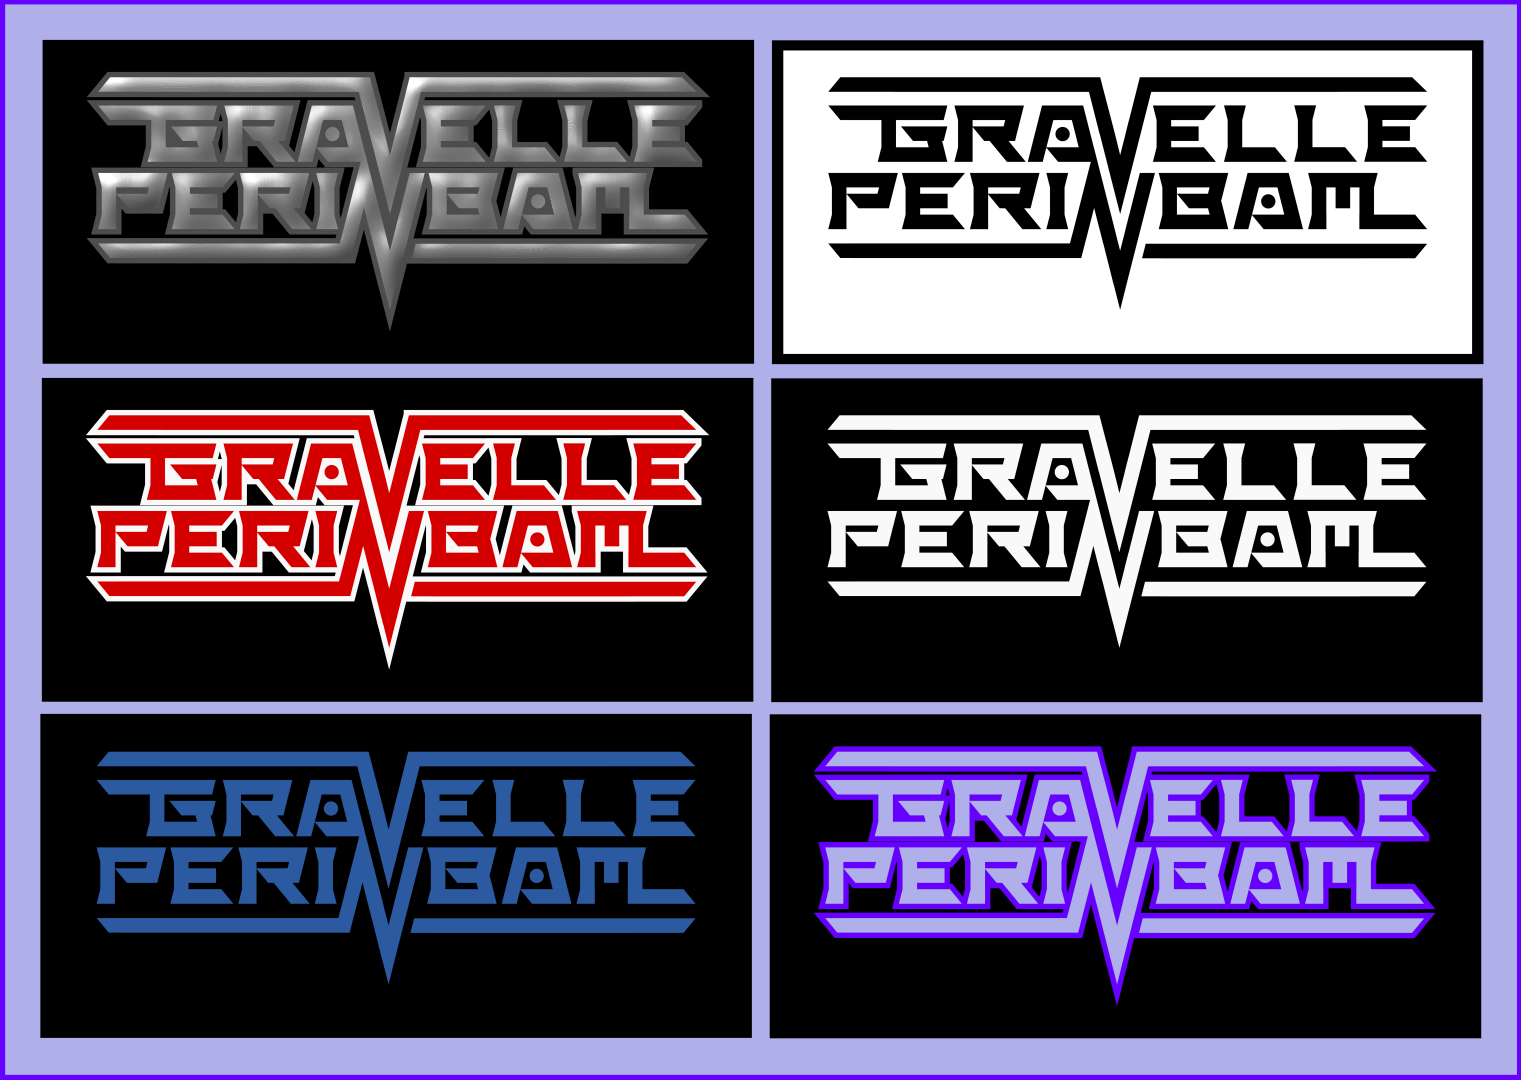 GravellePerinbam logos.png